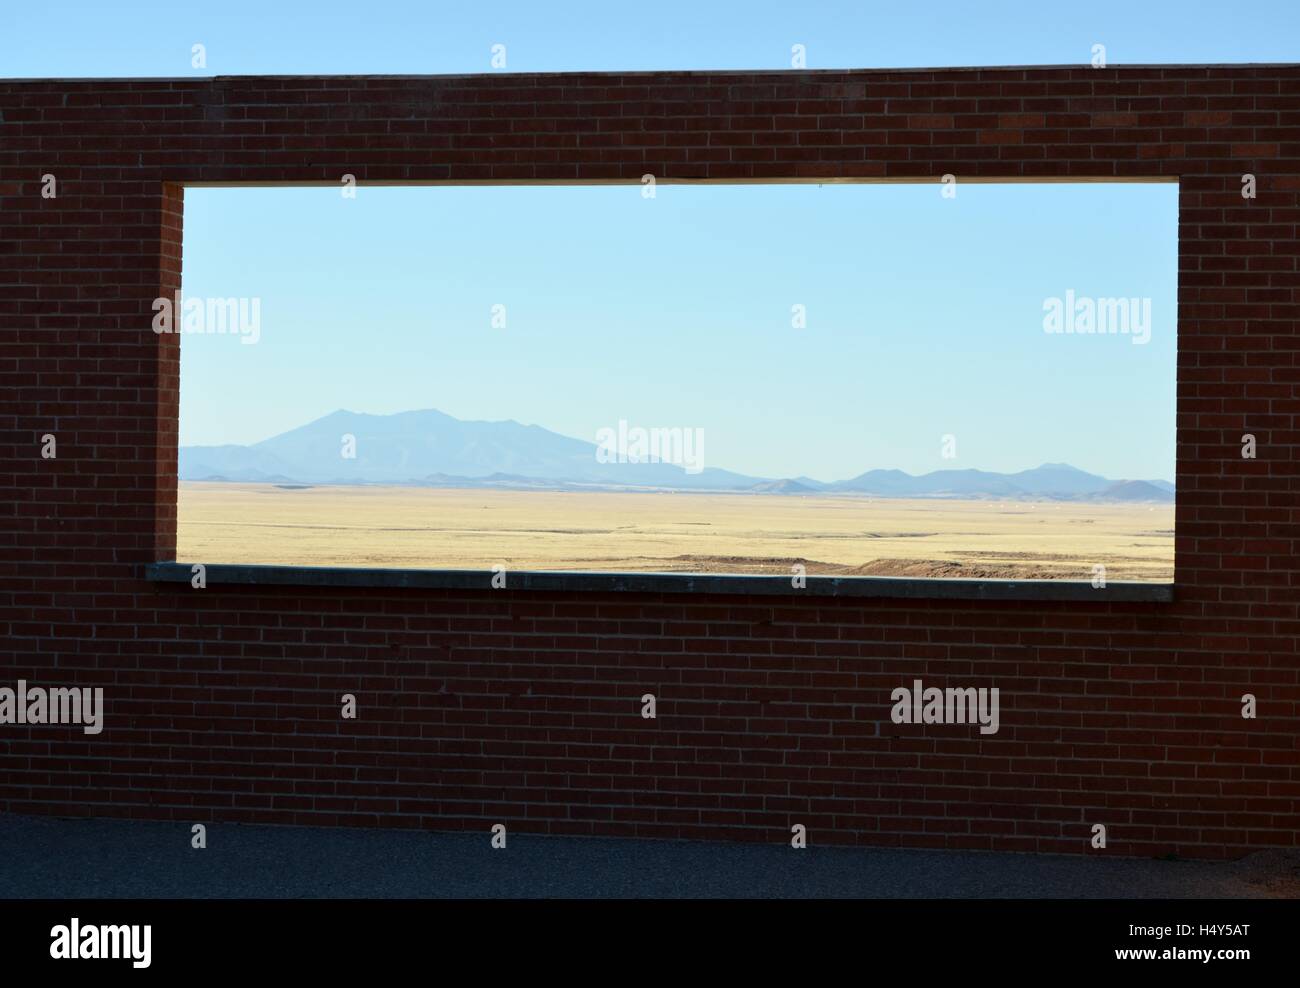 Ziegel, Meteorkrater, Fensteransicht des Südwestens Wüste, Berge in Ferne, dürr, trocken, heiß, Arizona, USA Stockfoto